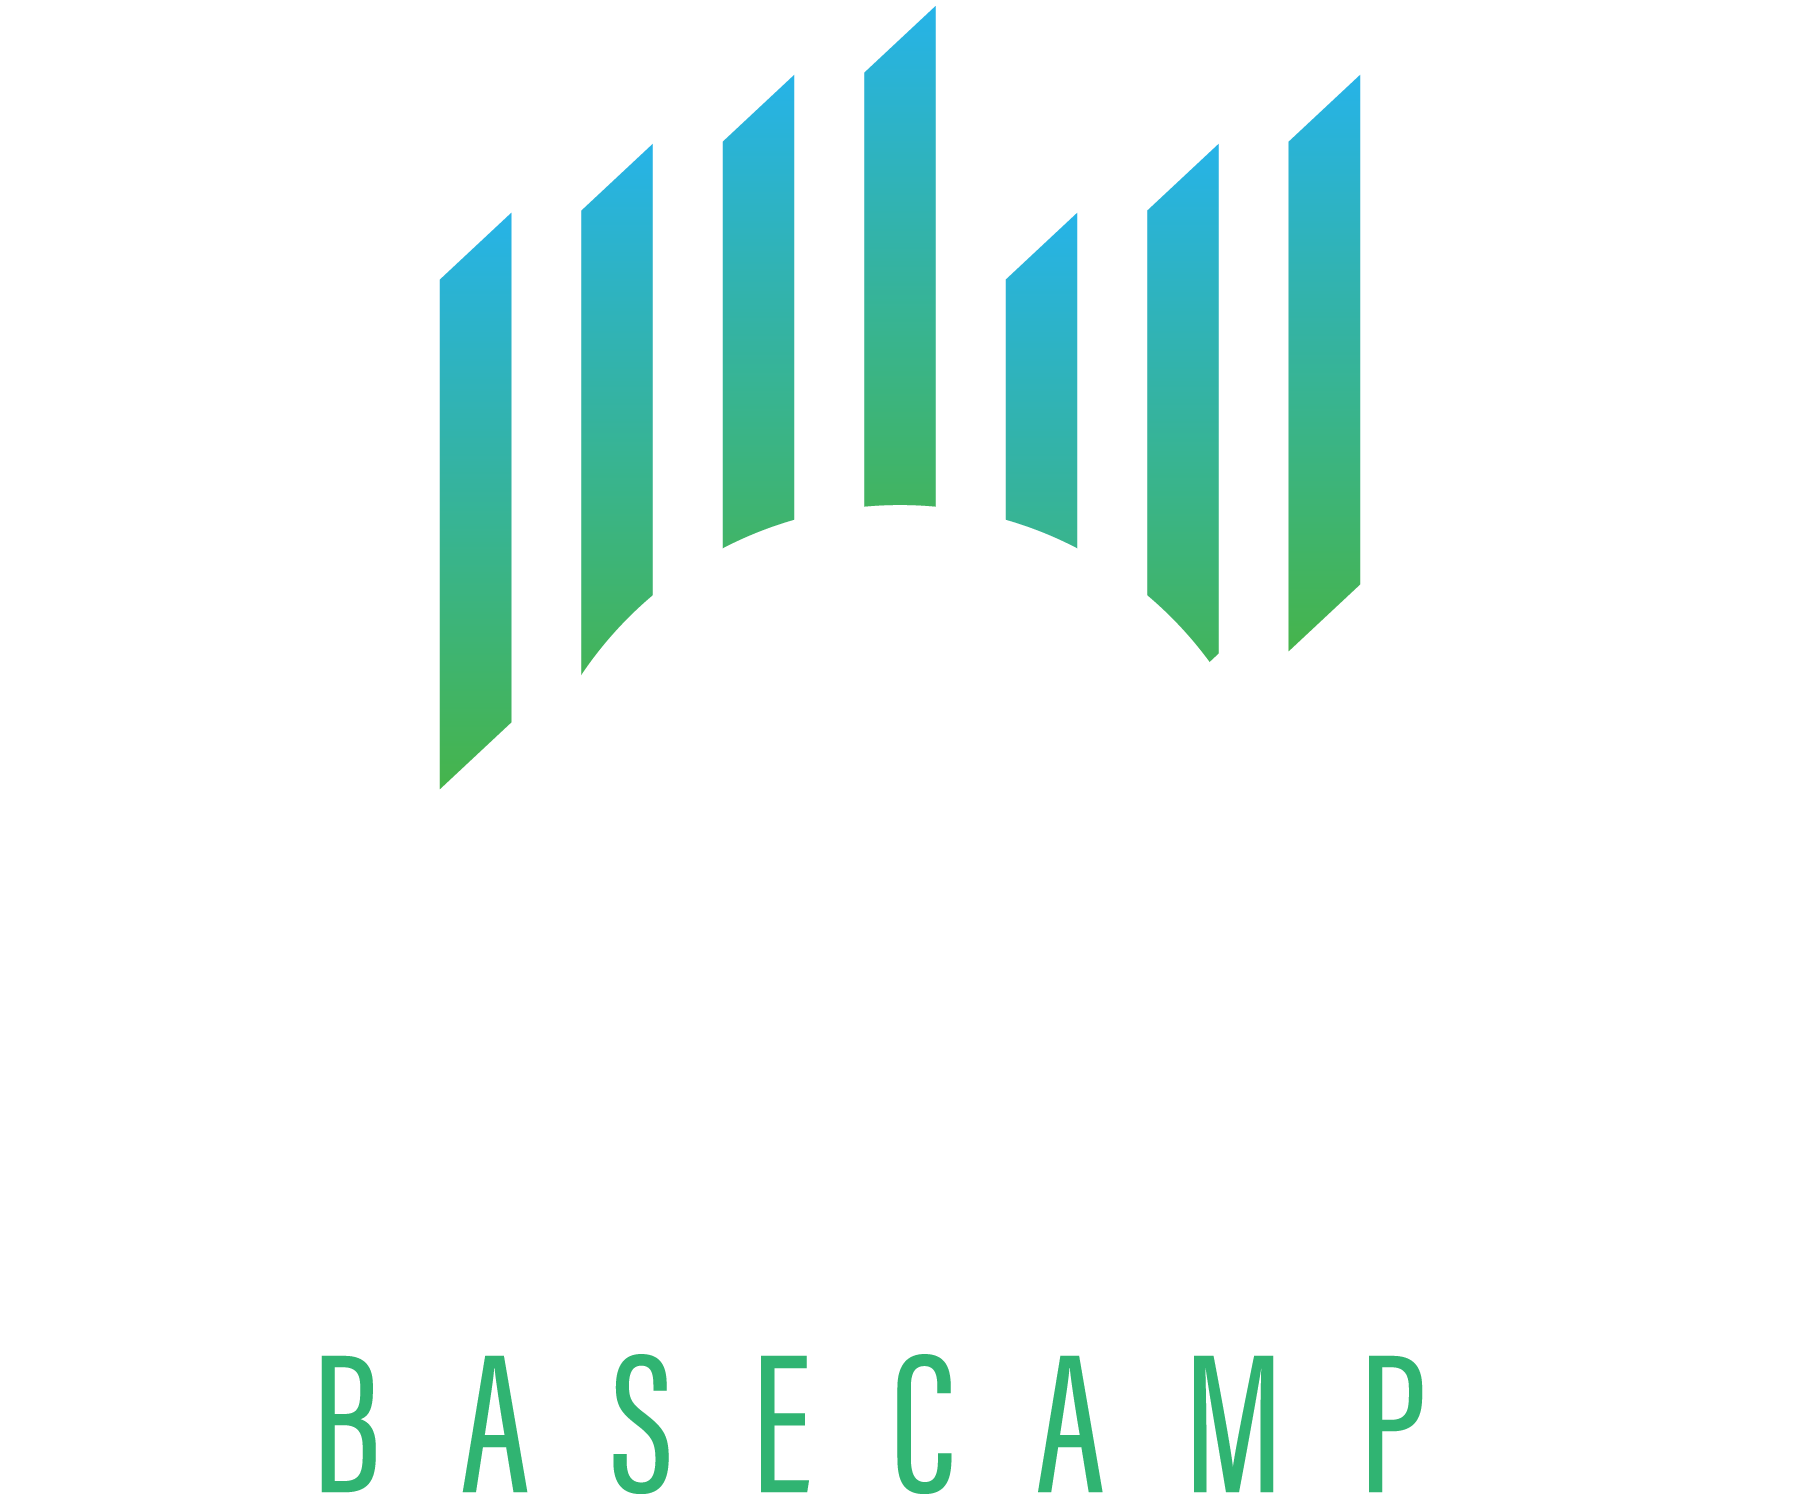 Borealis Basecamp